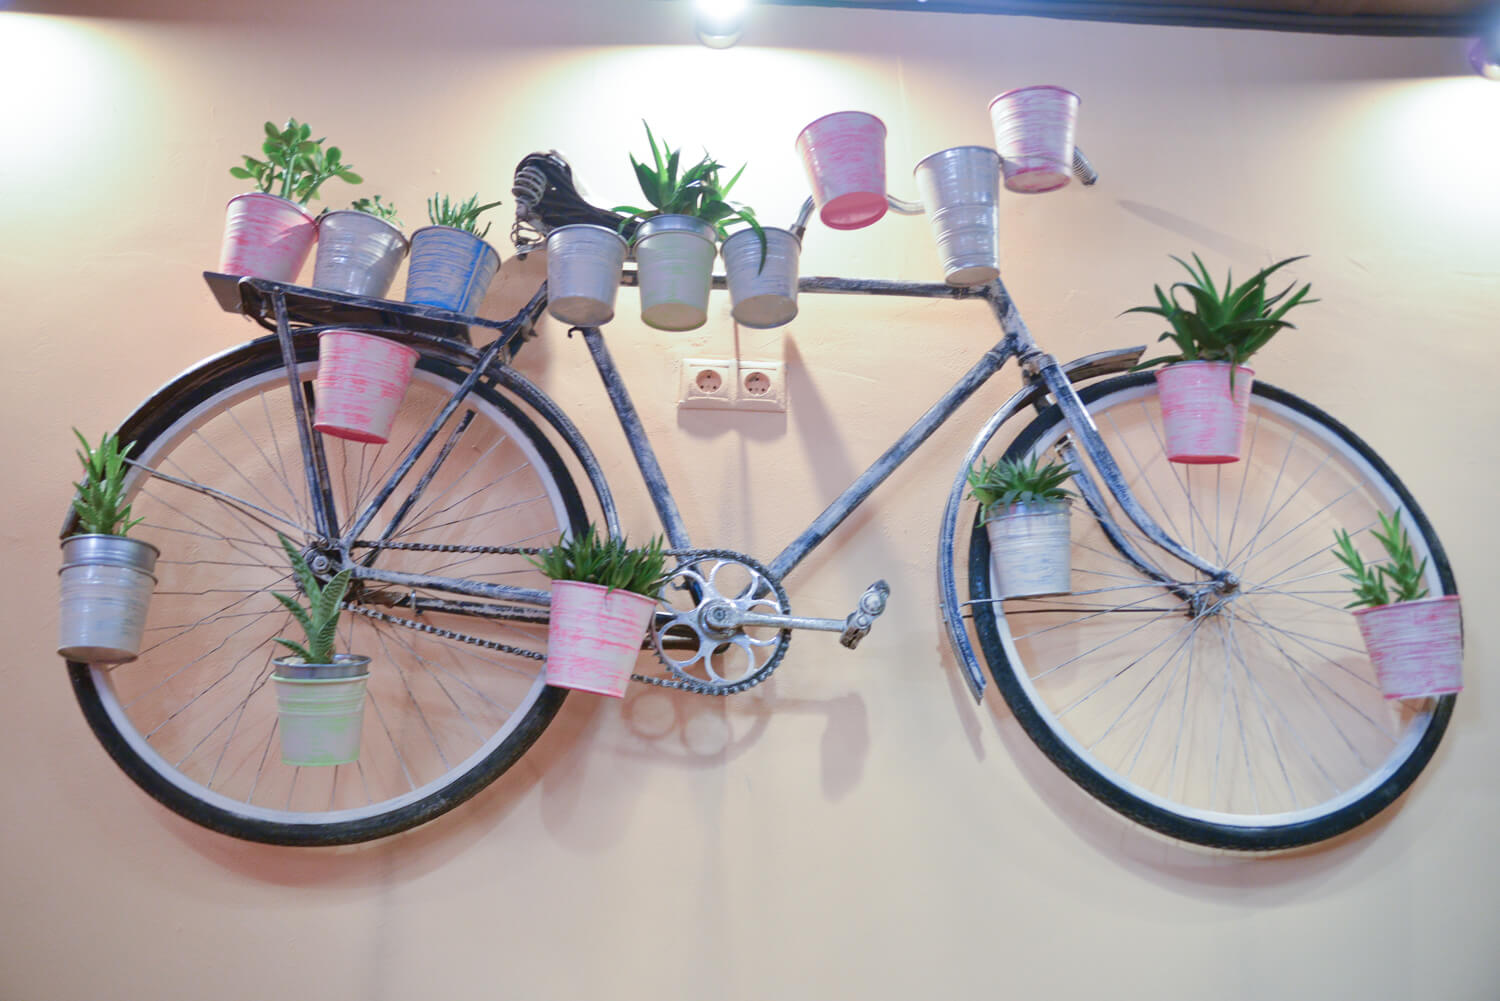 В поддержку темы эко, - велосипед с кашпо с живыми цветами.